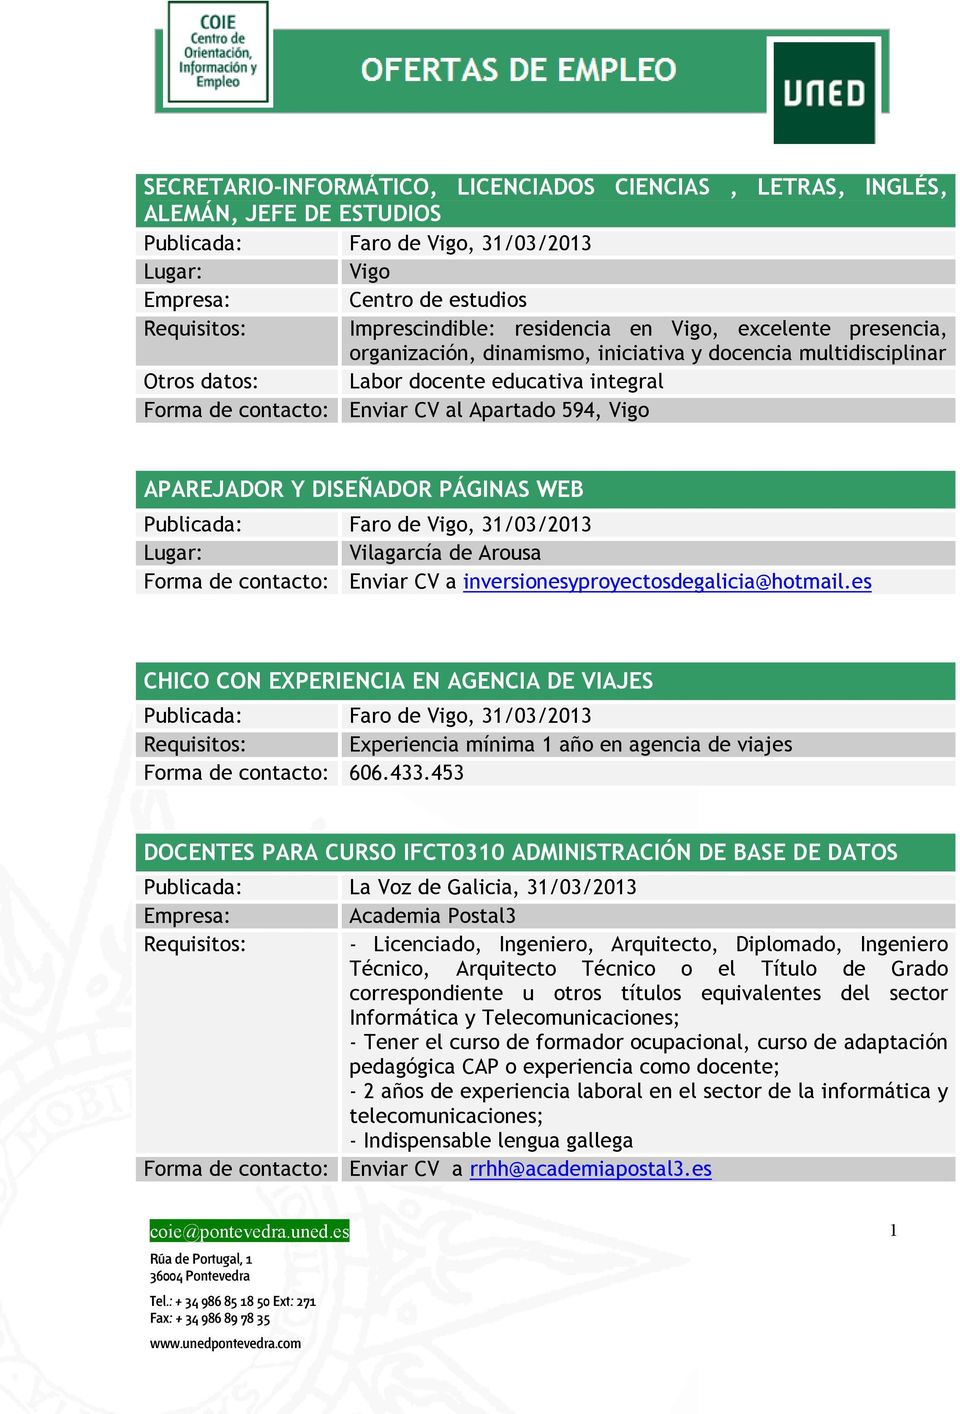 Y DISEÑADOR PÁGINAS WEB Publicada: Faro de Vigo, 31/03/2013 Vilagarcía de Arousa Forma de contacto: Enviar CV a inversionesyproyectosdegalicia@hotmail.